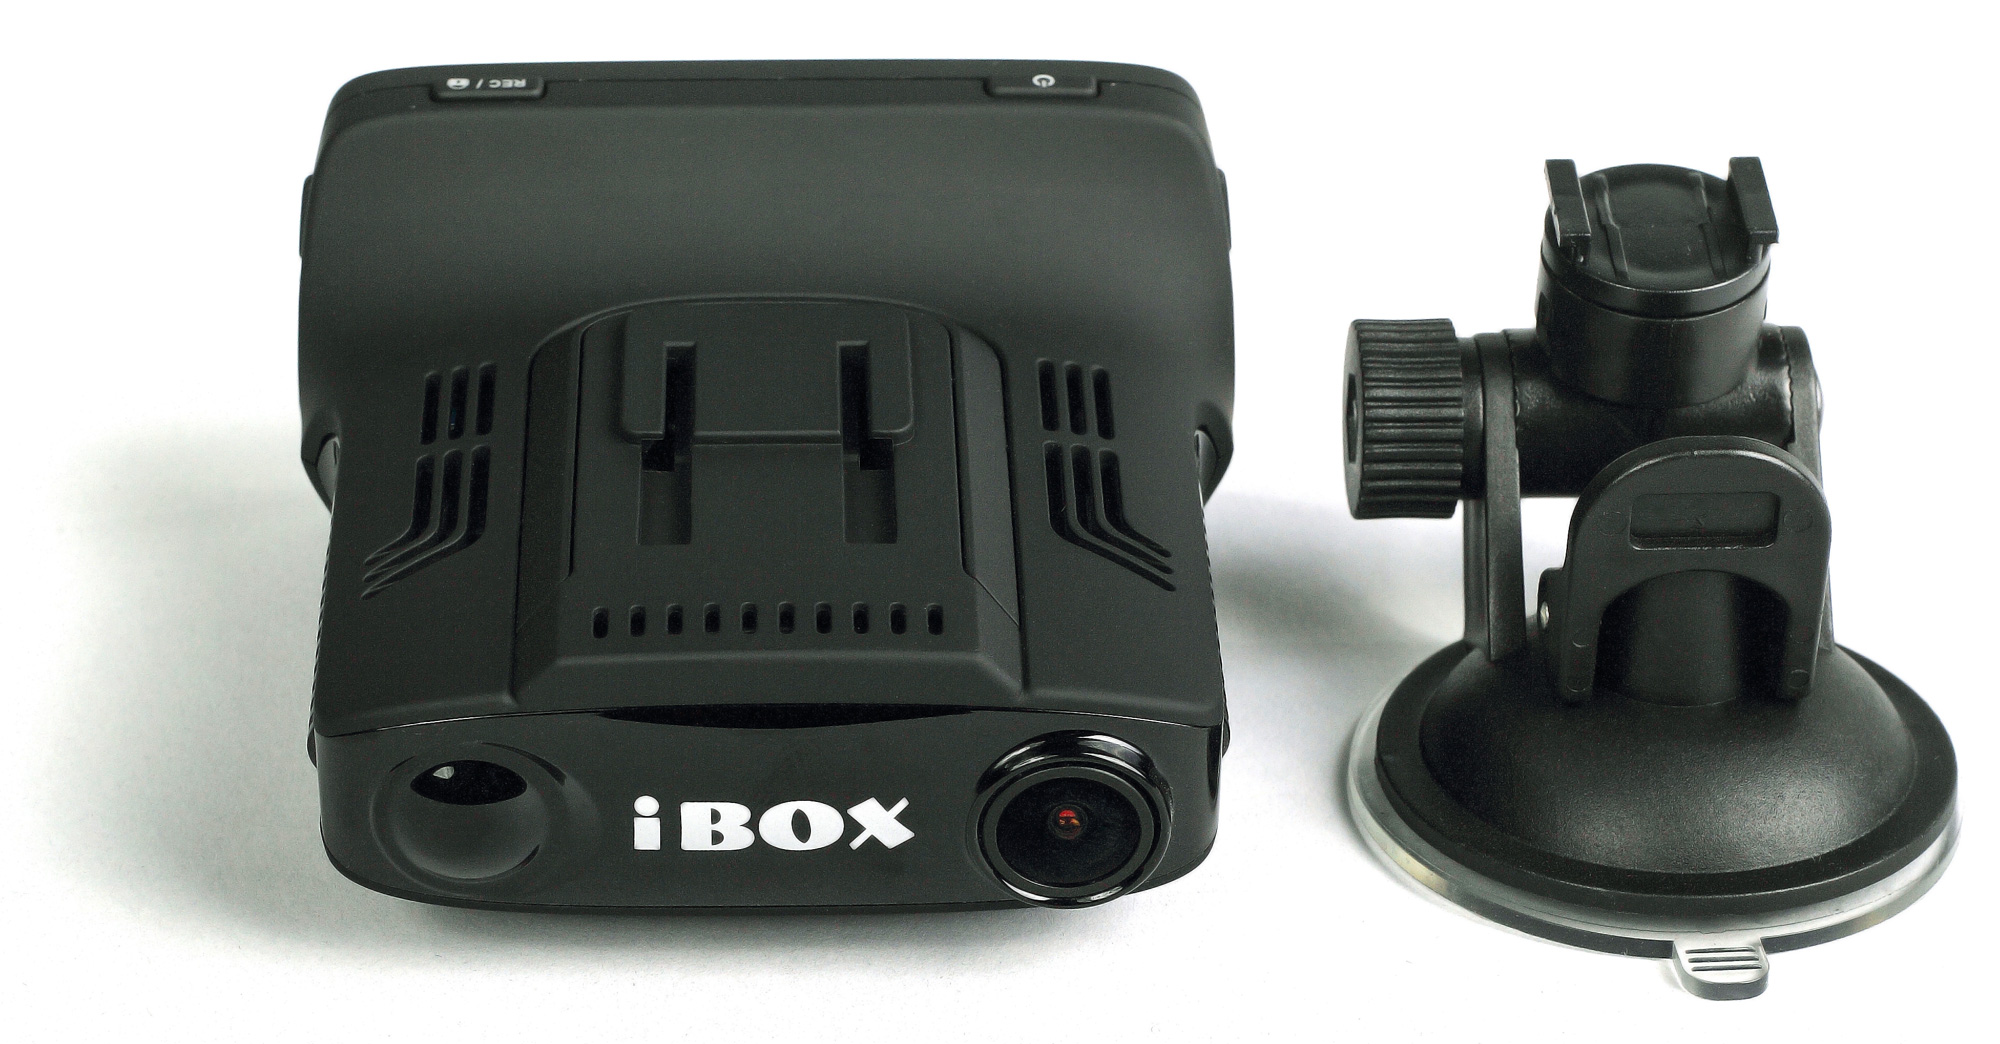 Регистратор 01. IBOX видеорегистратор f5. IBOX Combo f5. IBOX Combo f5 Signature. Видеорегистратор IBOX Combo f5.